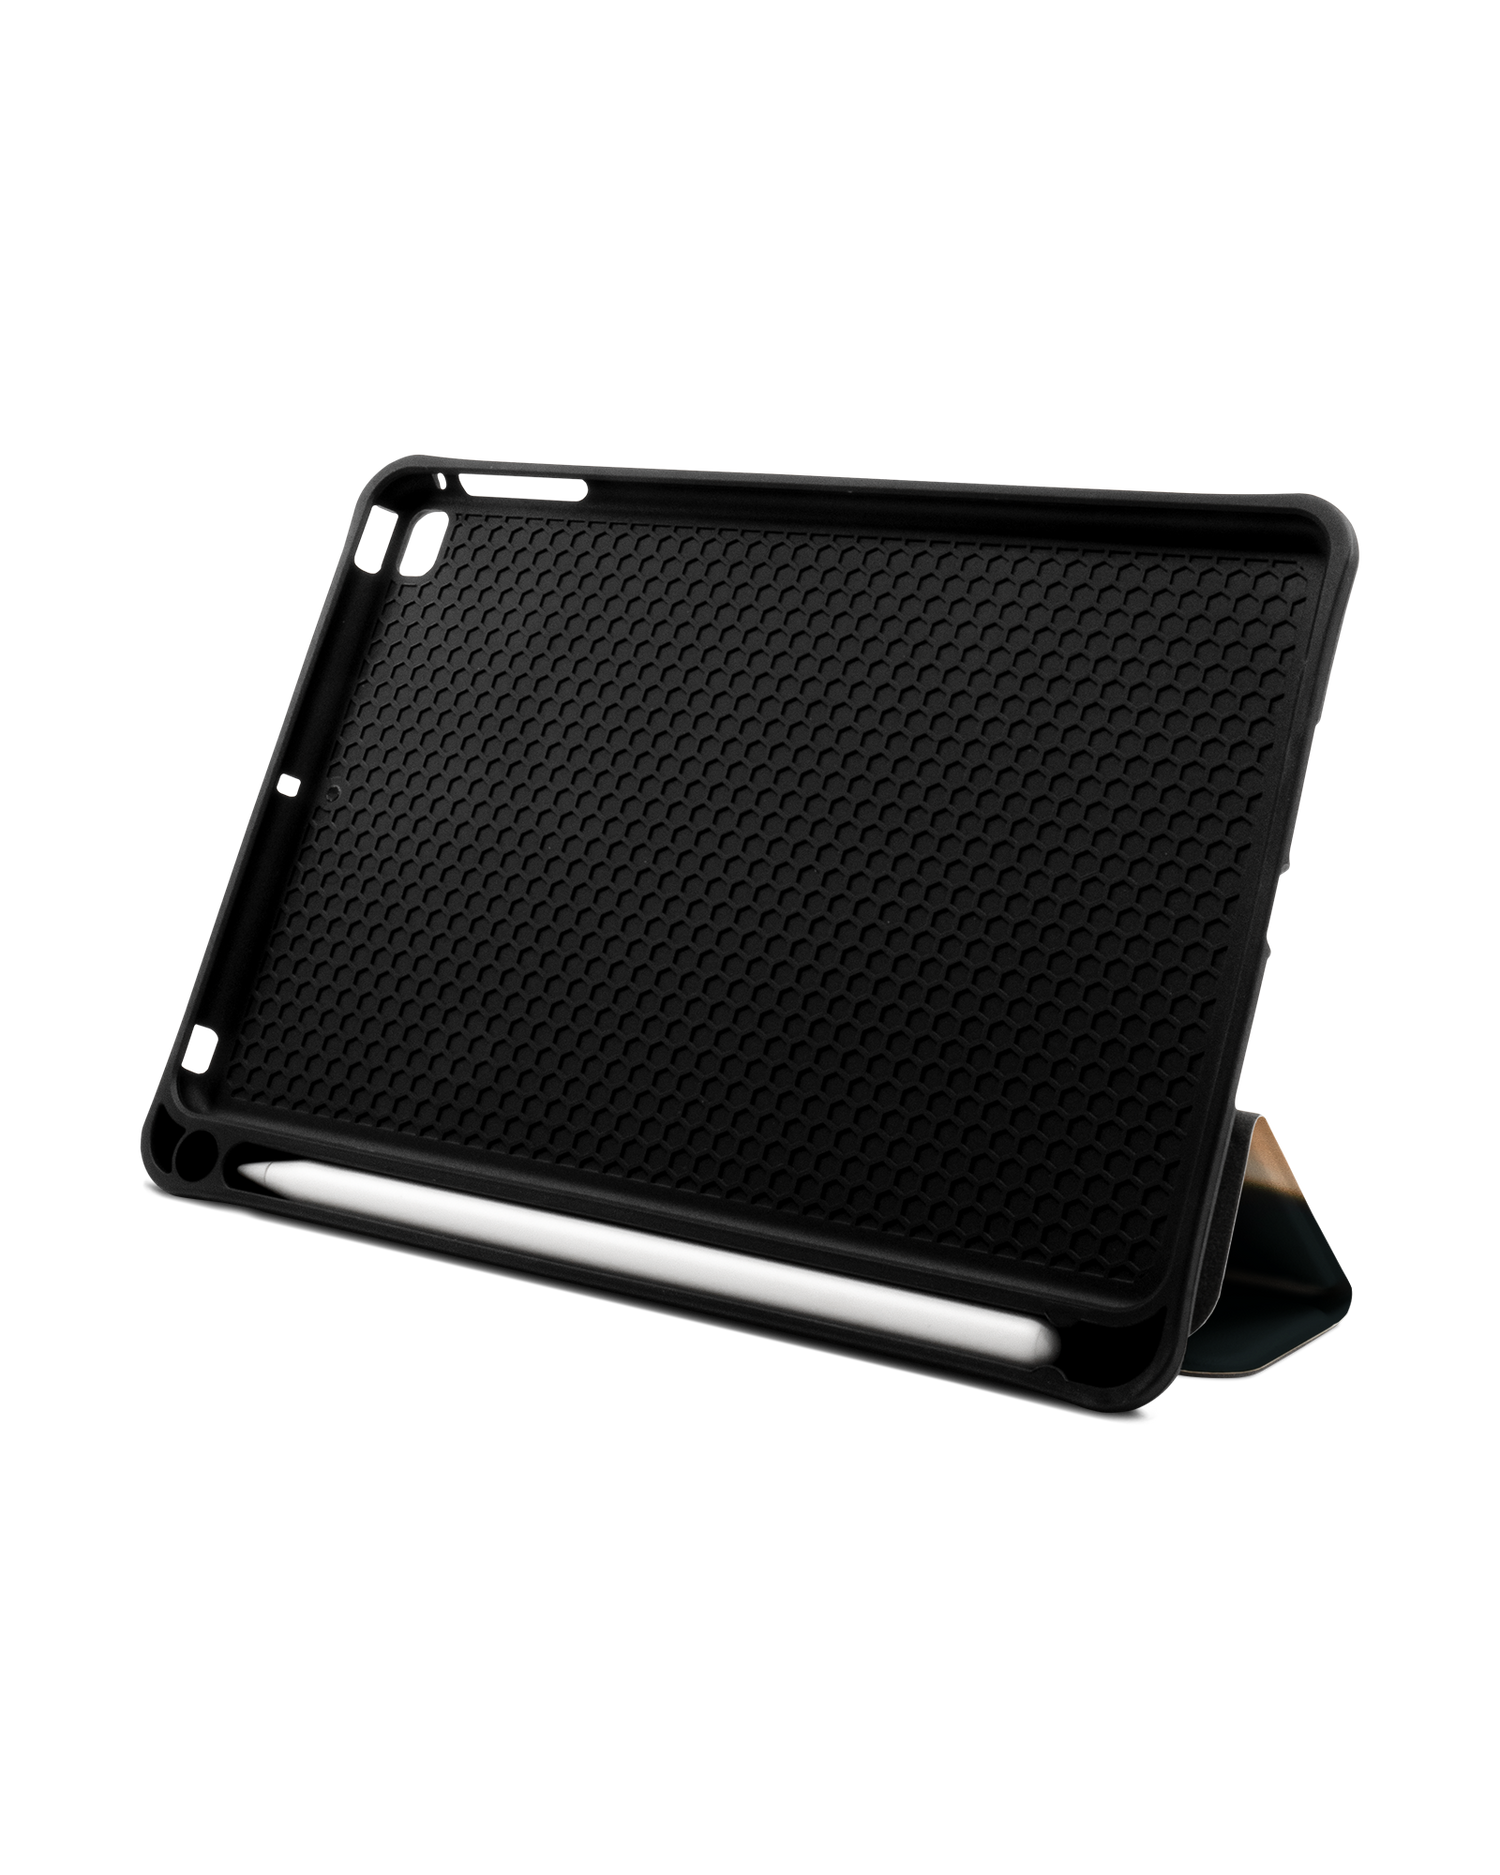 Siamese Cat iPad Hülle mit Stifthalter Apple iPad mini 5 (2019): Aufgestellt im Querformat von vorne